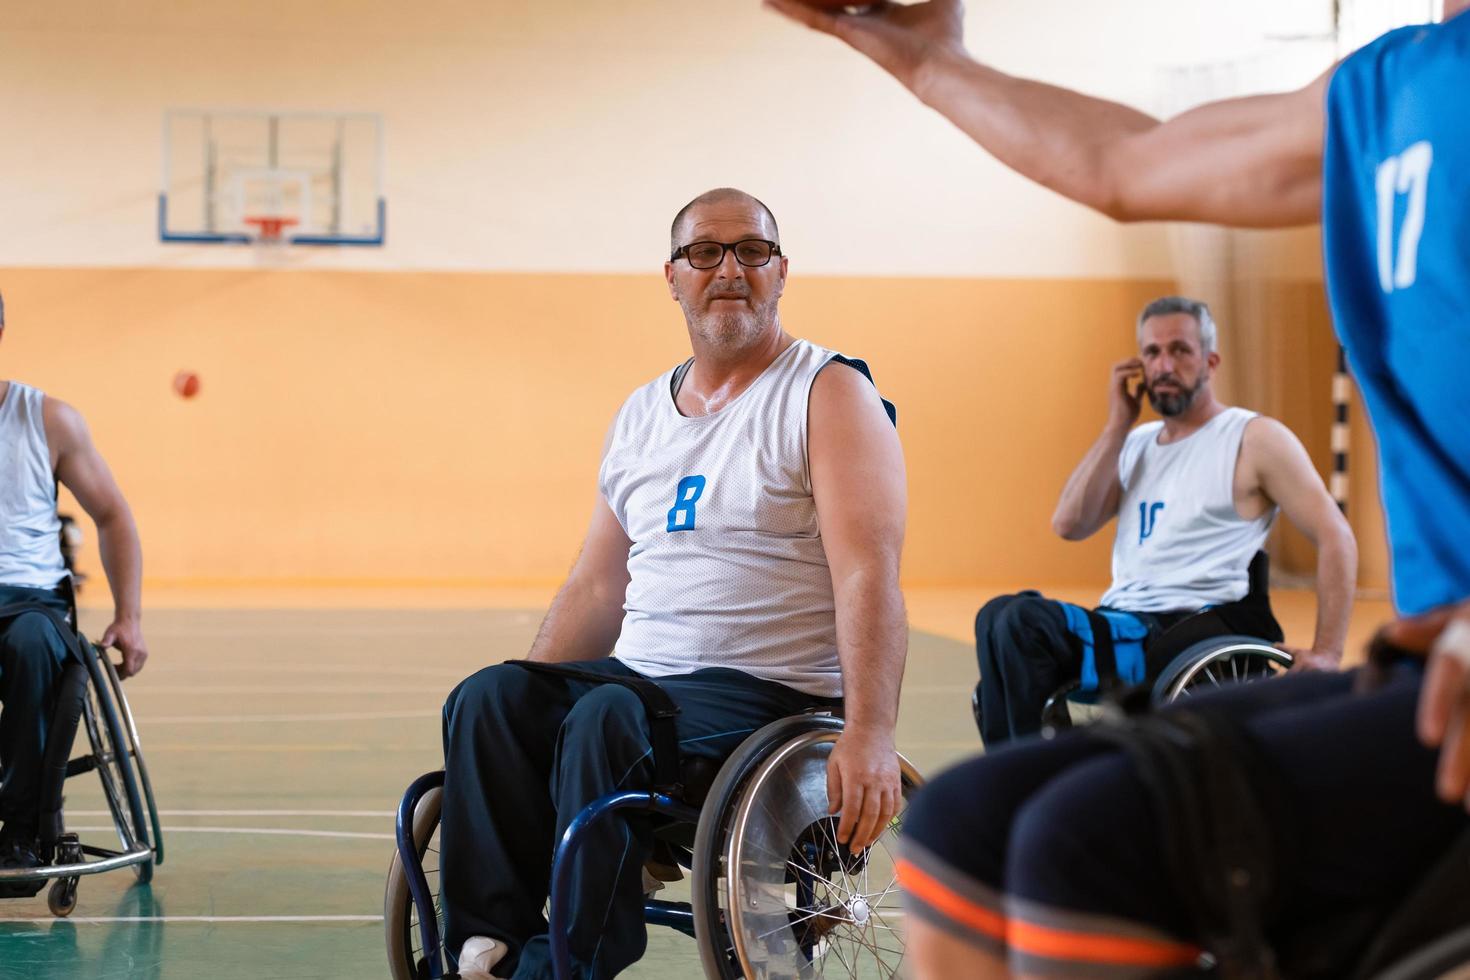 les anciens combattants handicapés en fauteuil roulant avec un équipement professionnel jouent au basket-ball dans la salle.le concept de sports handicapés photo